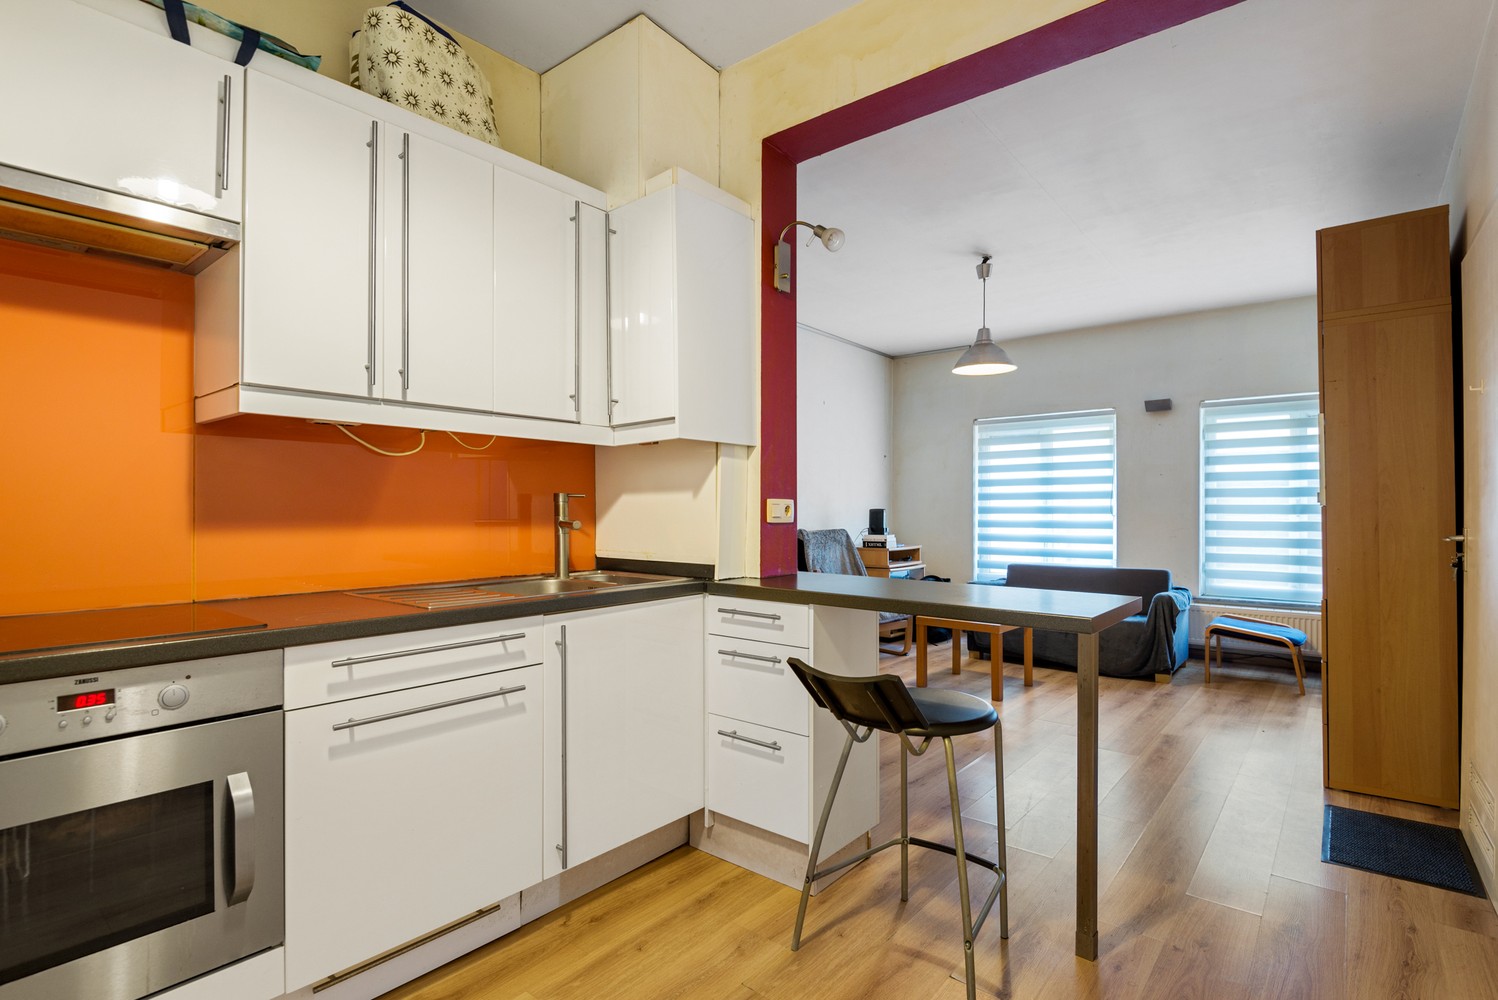 Gelijkvloers appartement met 1 slaapkamer te koop in Mechelen afbeelding 6